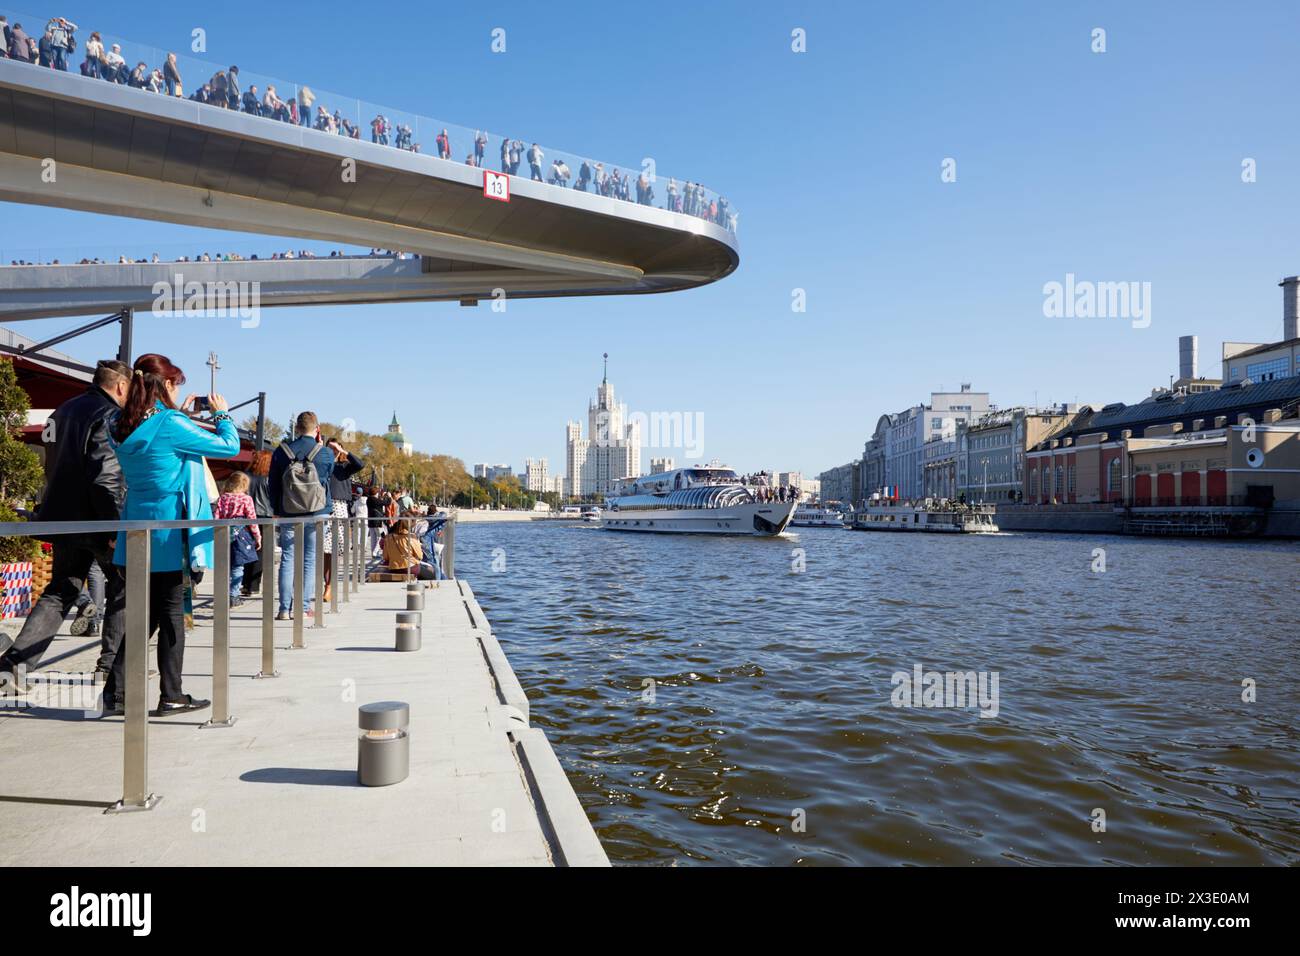 MOSCA, RUSSIA - 24 settembre 2017: Persone sull'argine di Moskvoretskaya, sul ponte galleggiante sopra il fiume Moskva. Il ponte è una struttura esterna di 70 metri con Foto Stock